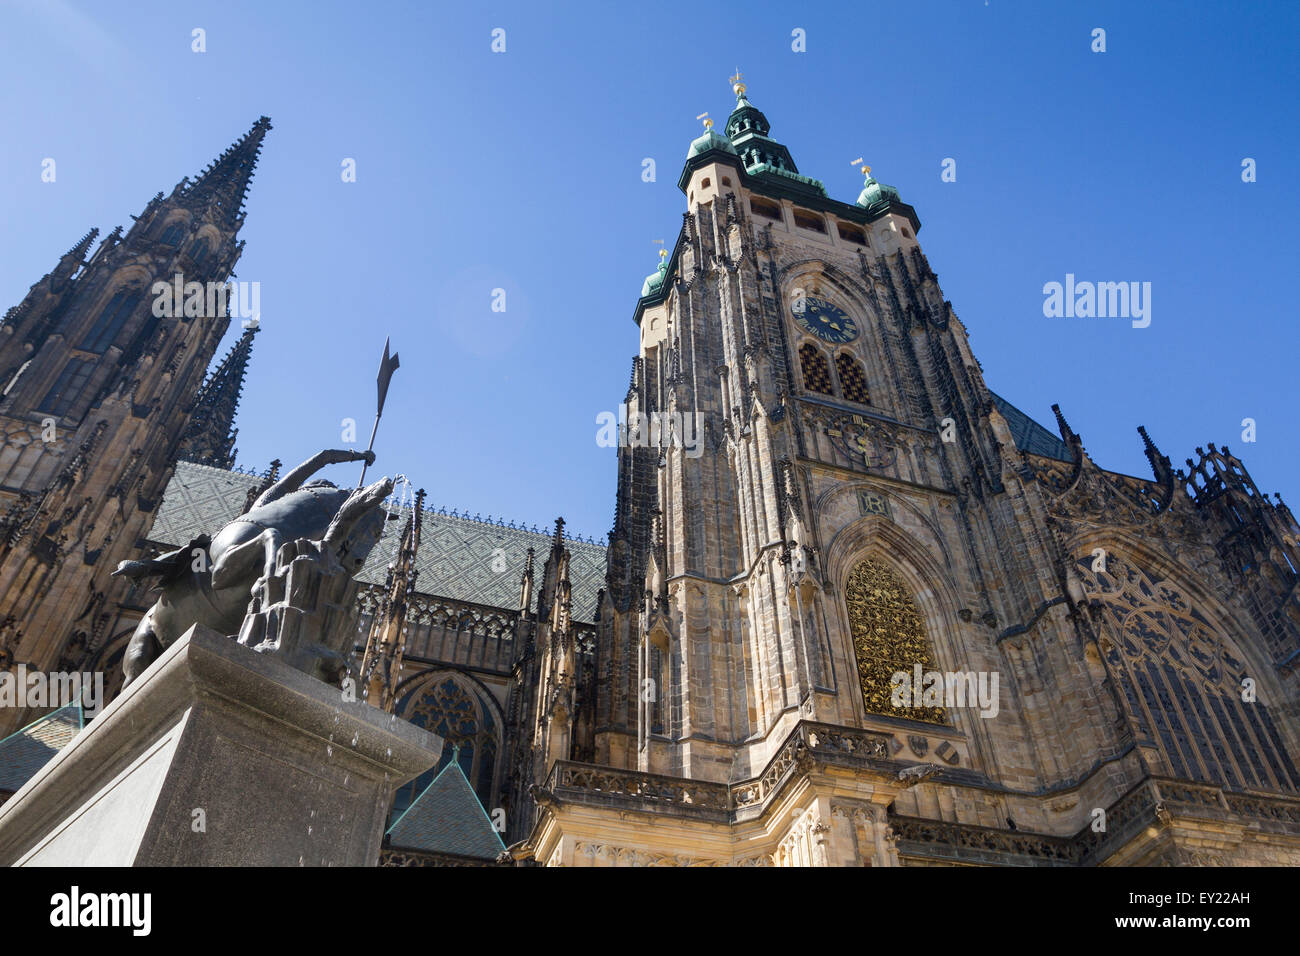 St Vitus cathedral, Prague castle, Czech Republic. Stock Photo